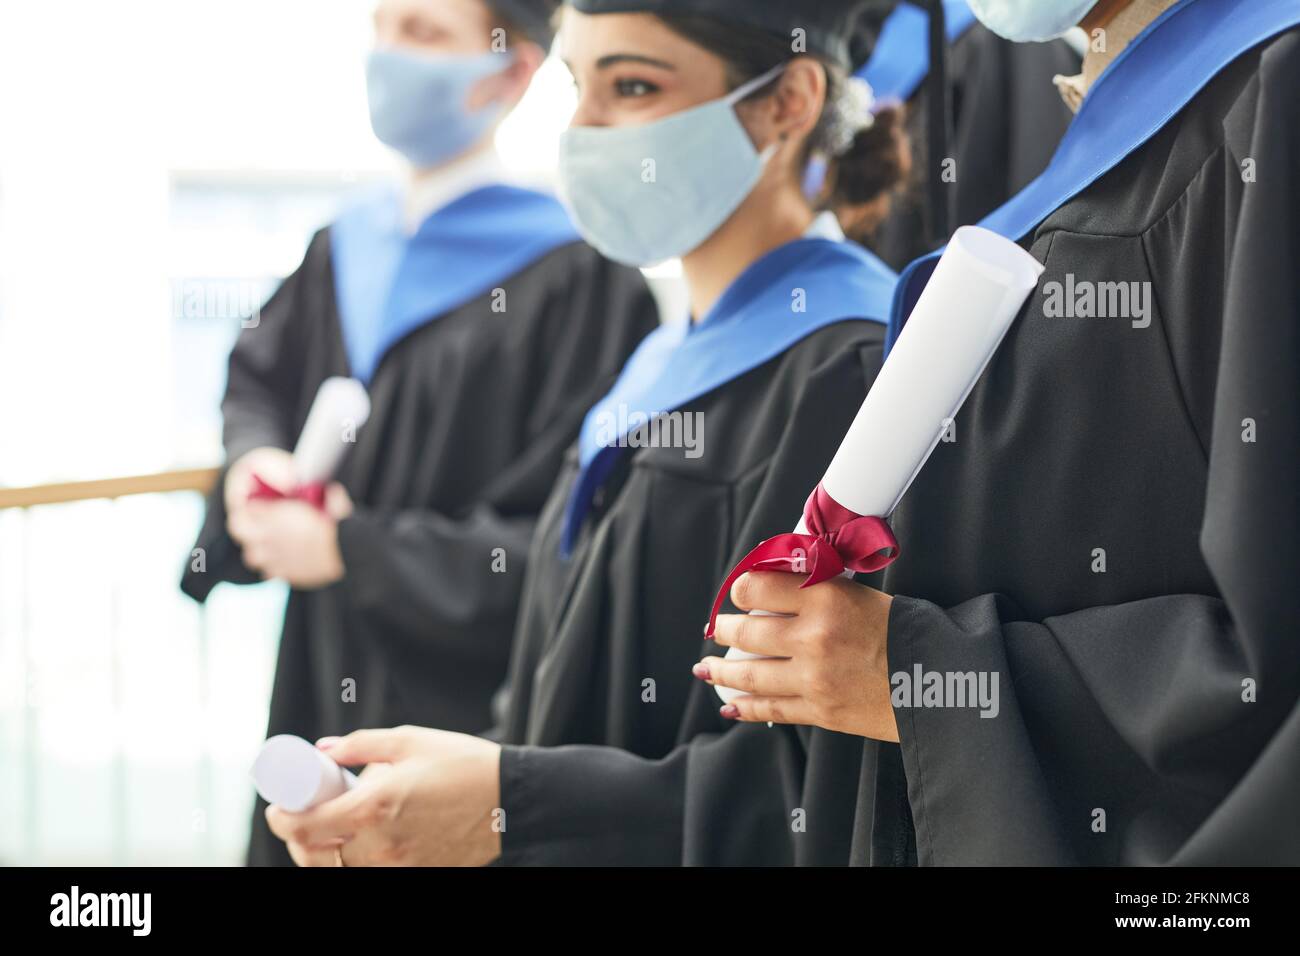 Vista lateral de diversos grupos de jóvenes que llevan graduación batas y máscaras mientras están de pie en fila Foto de stock